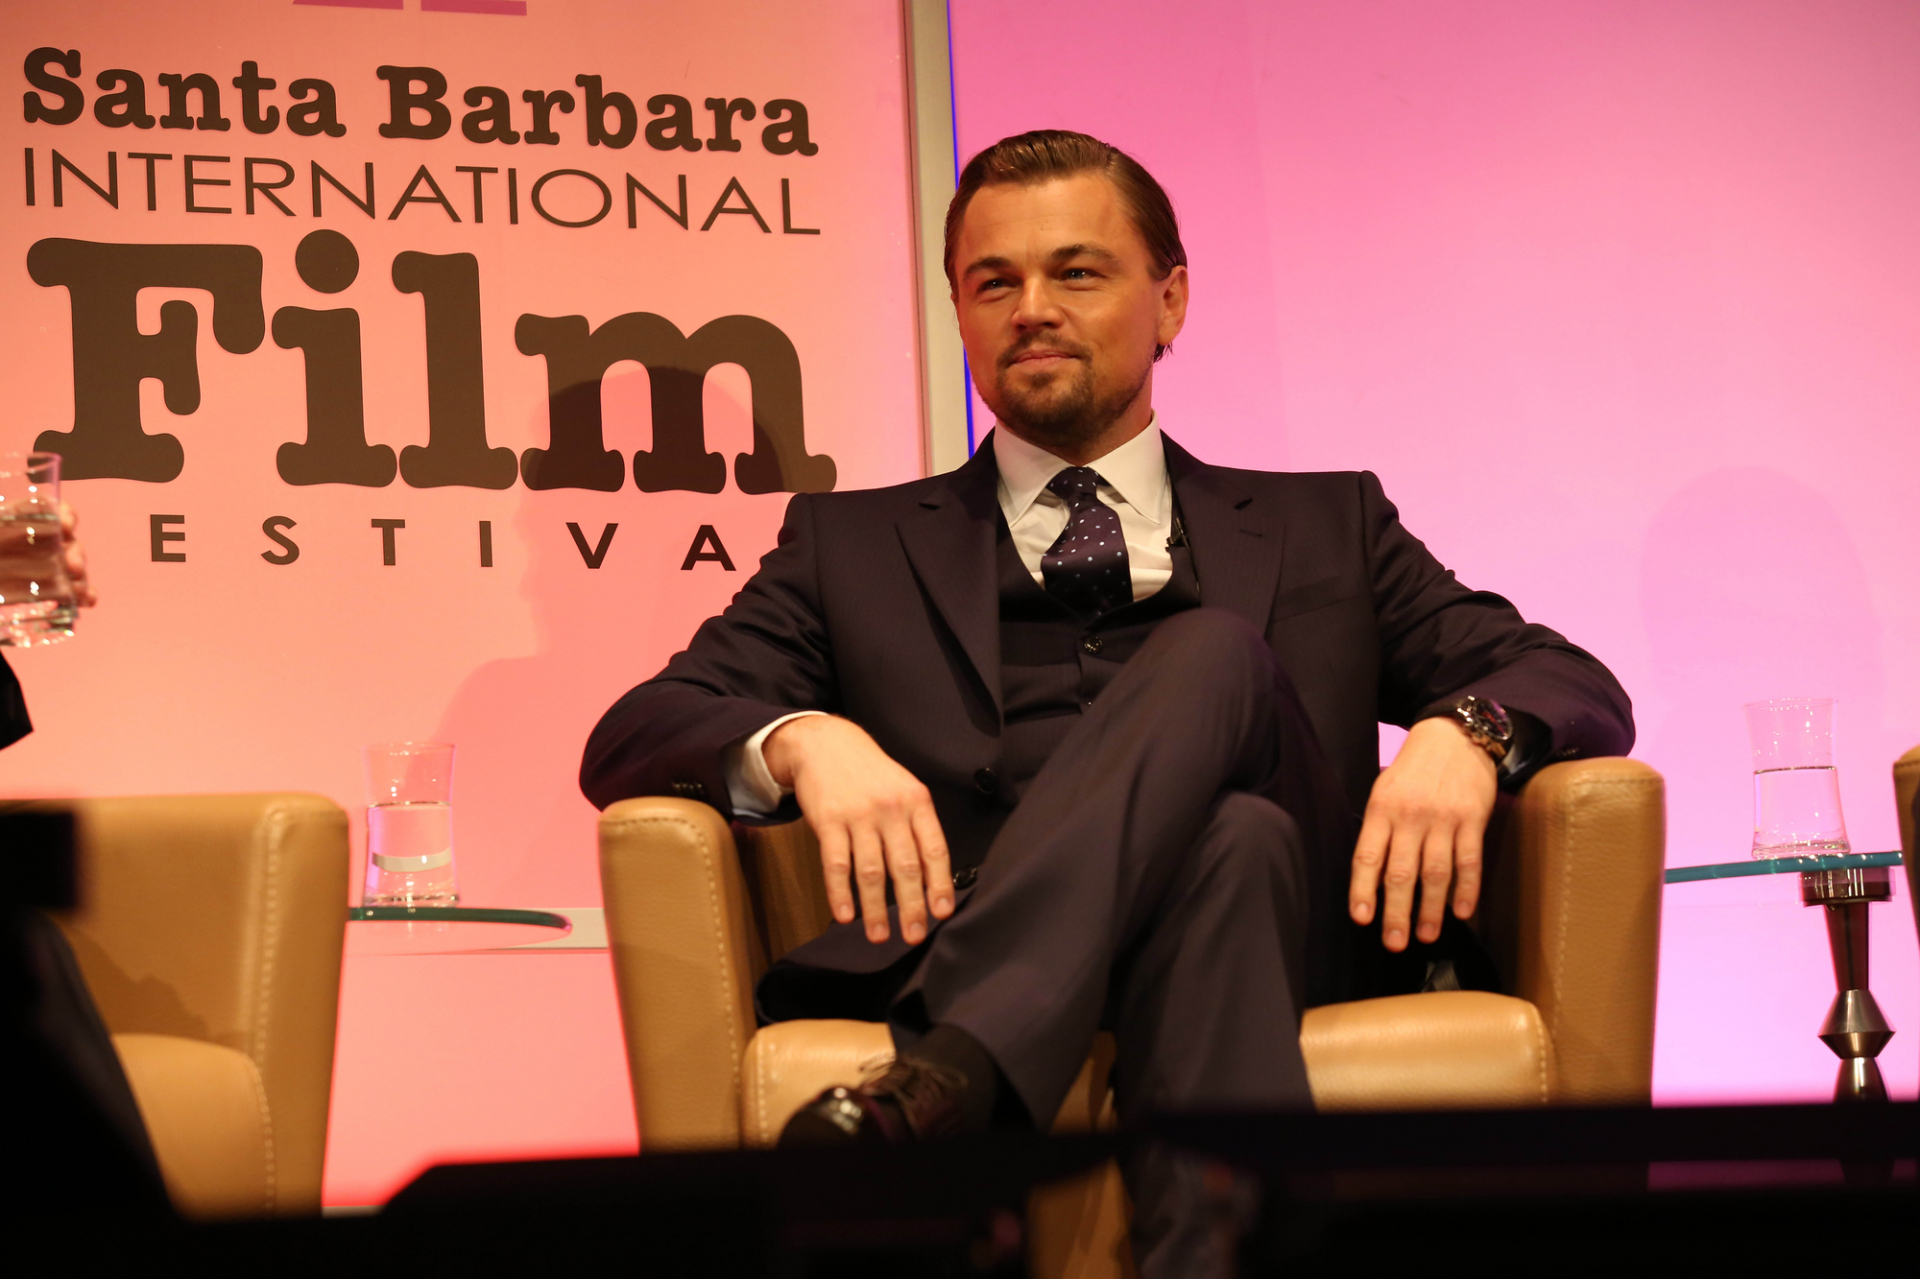 48 éves lett Leonardo DiCaprio, Gigi Hadid nélkül partizott 